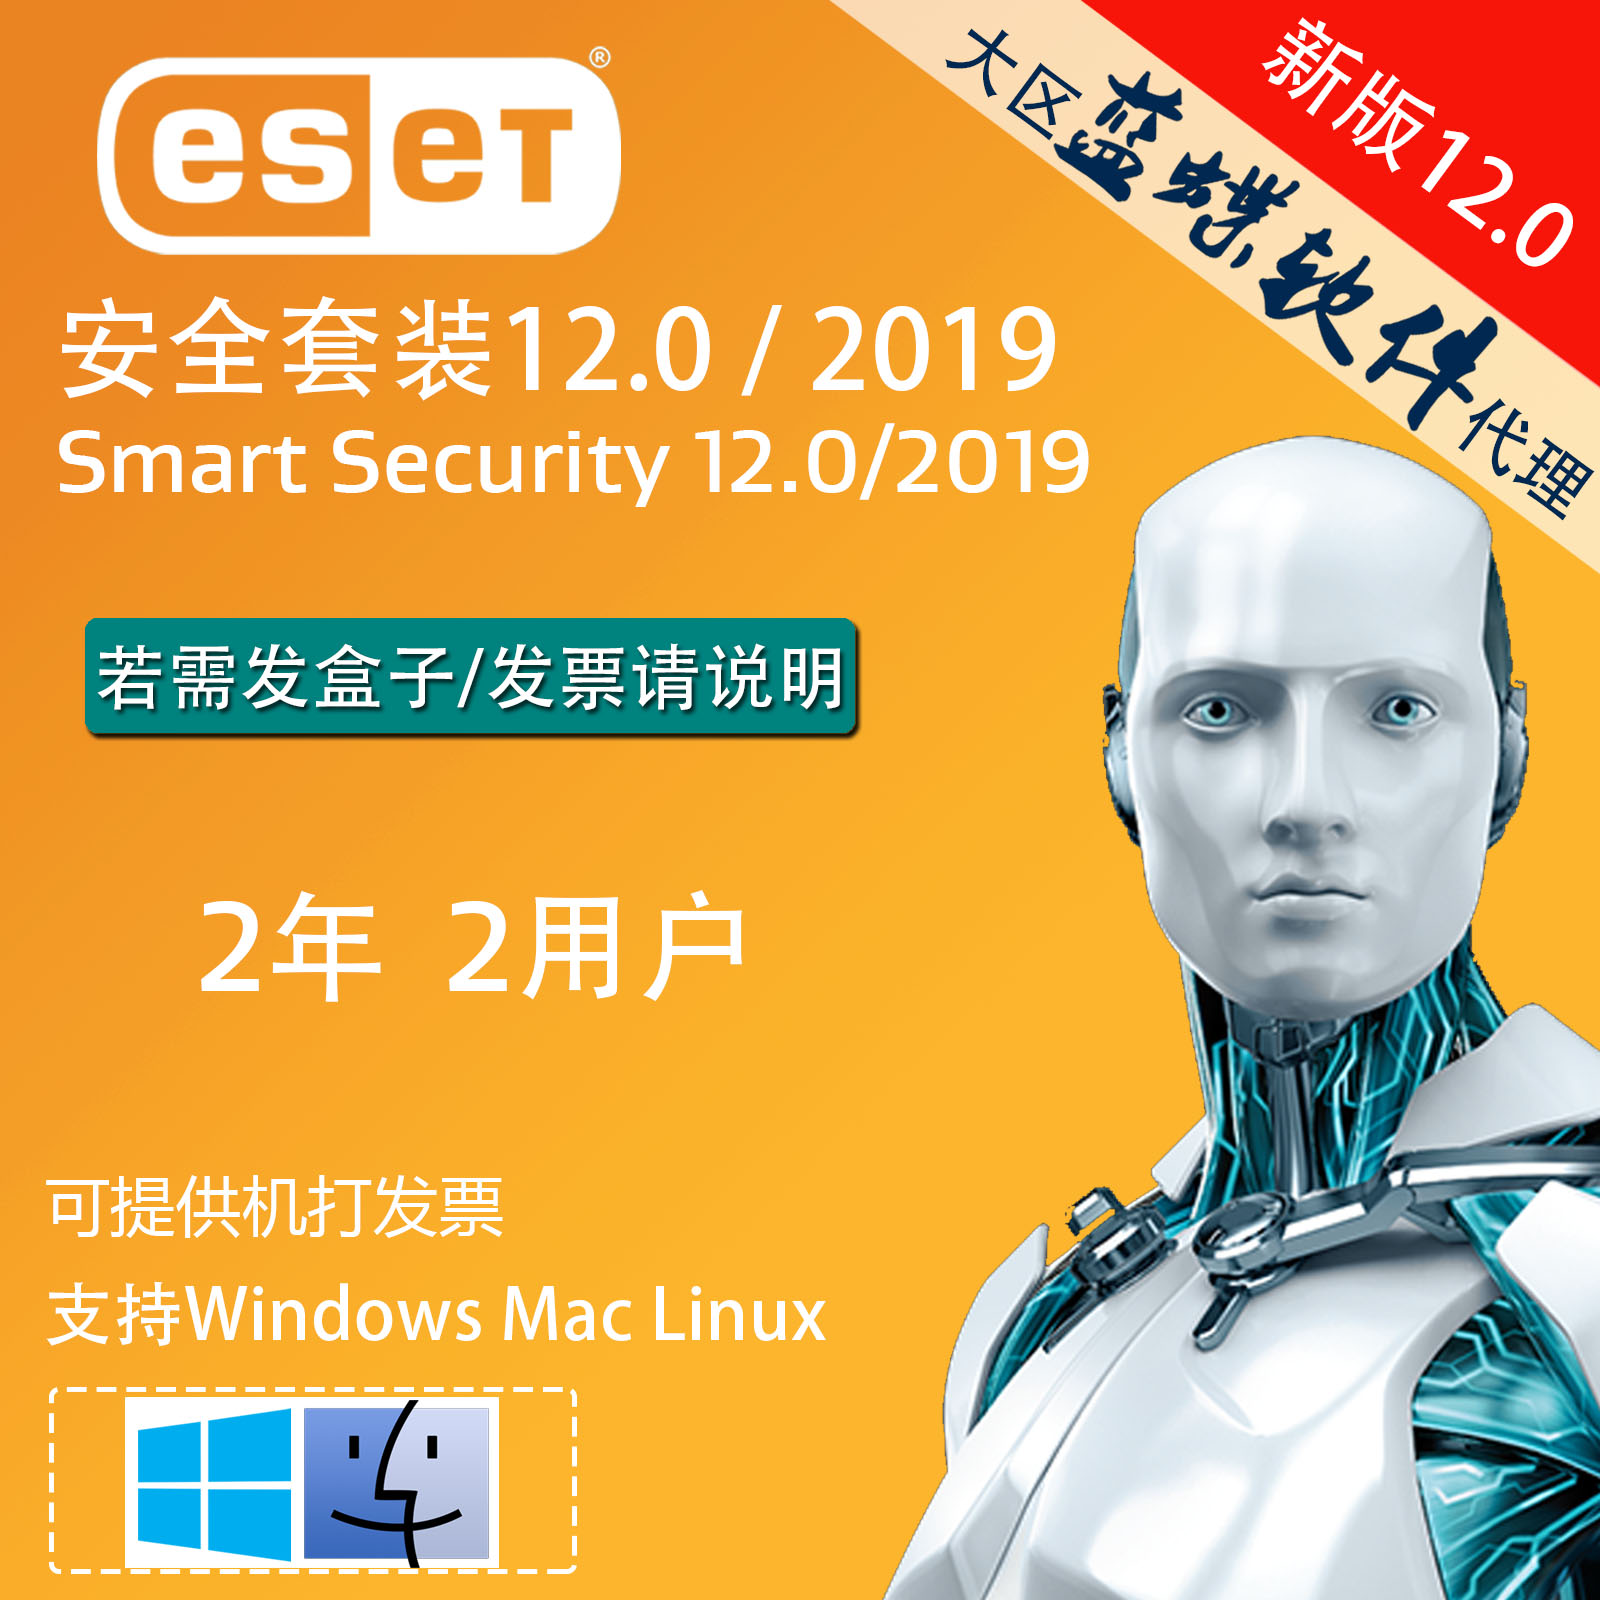 مفاتيح eset smart security 12